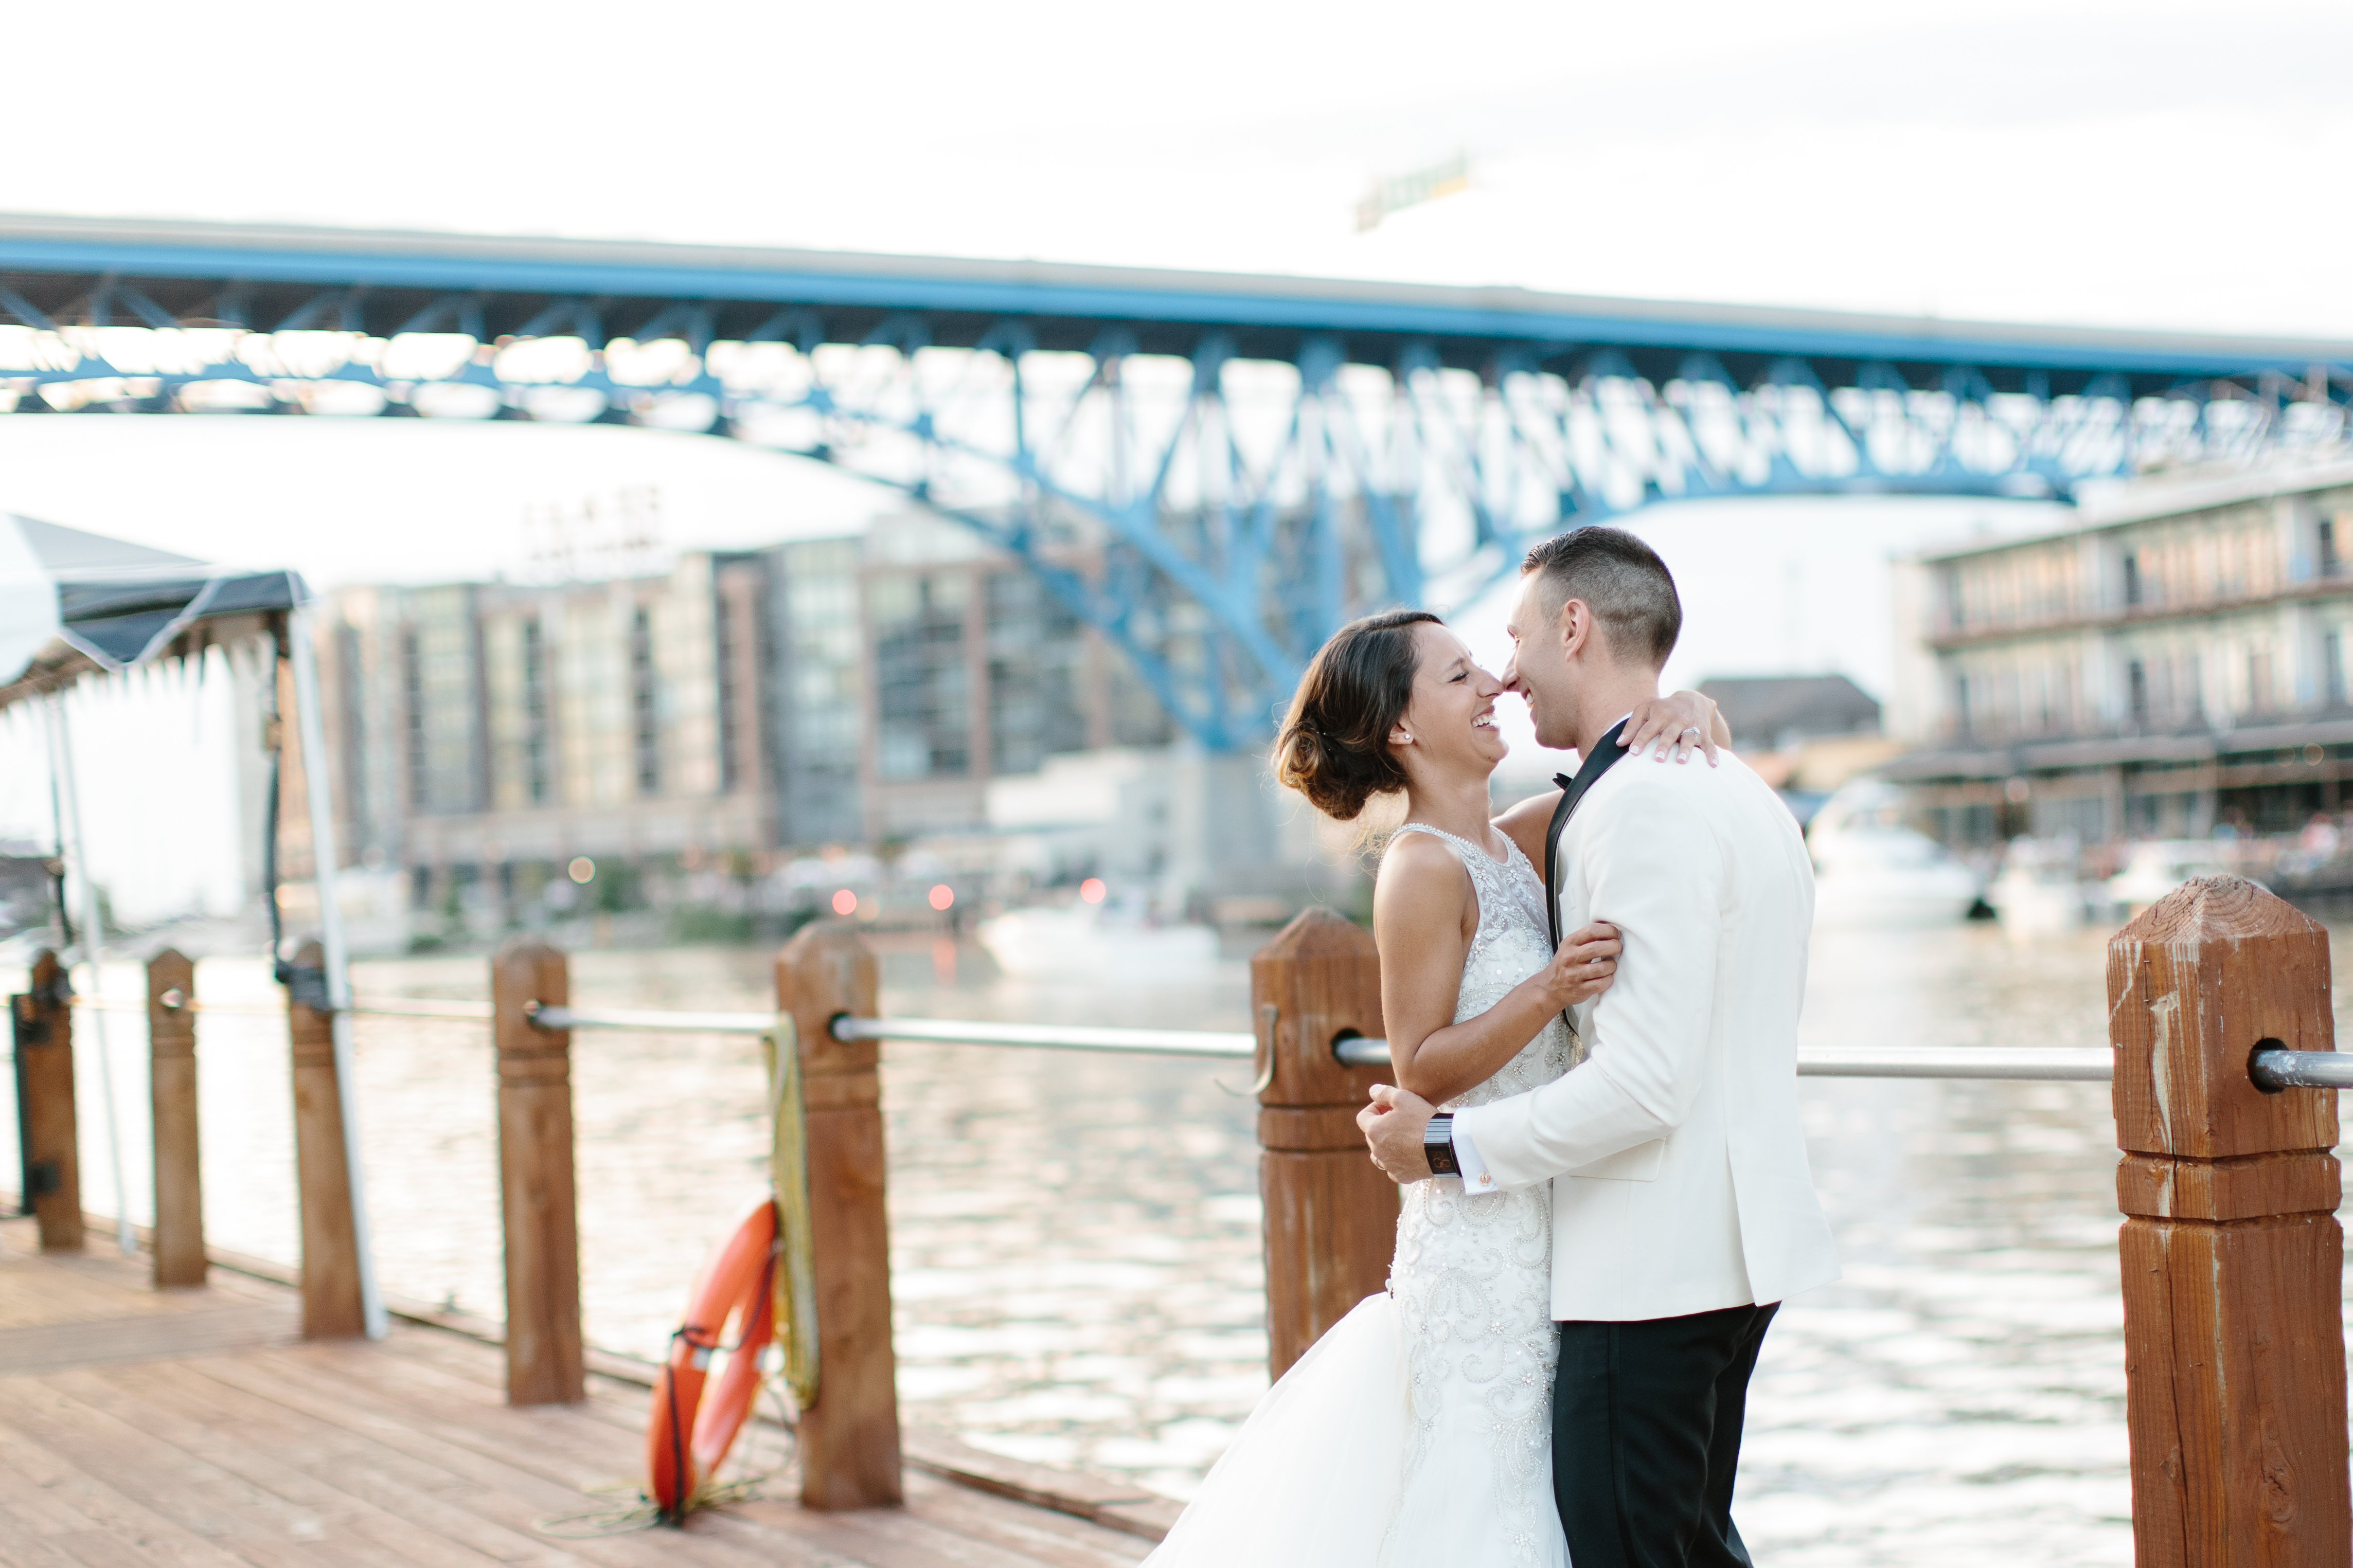 Cleveland Ohio nautical wedding inspiration